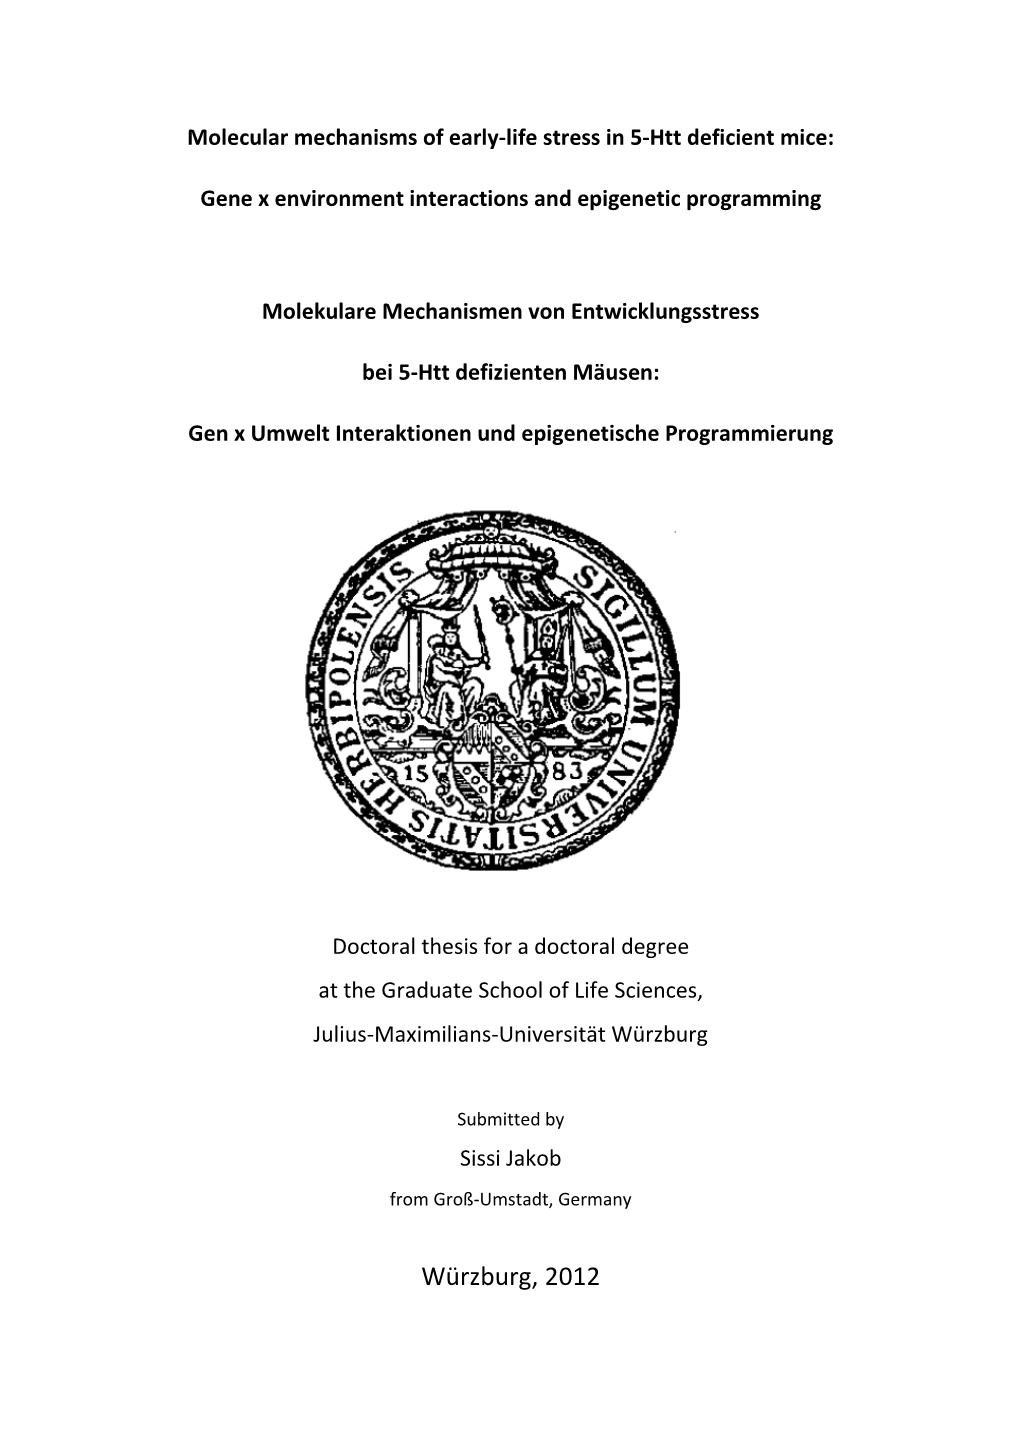 Dissertation Jakob Sissi Inkl. Gene Lists Bib